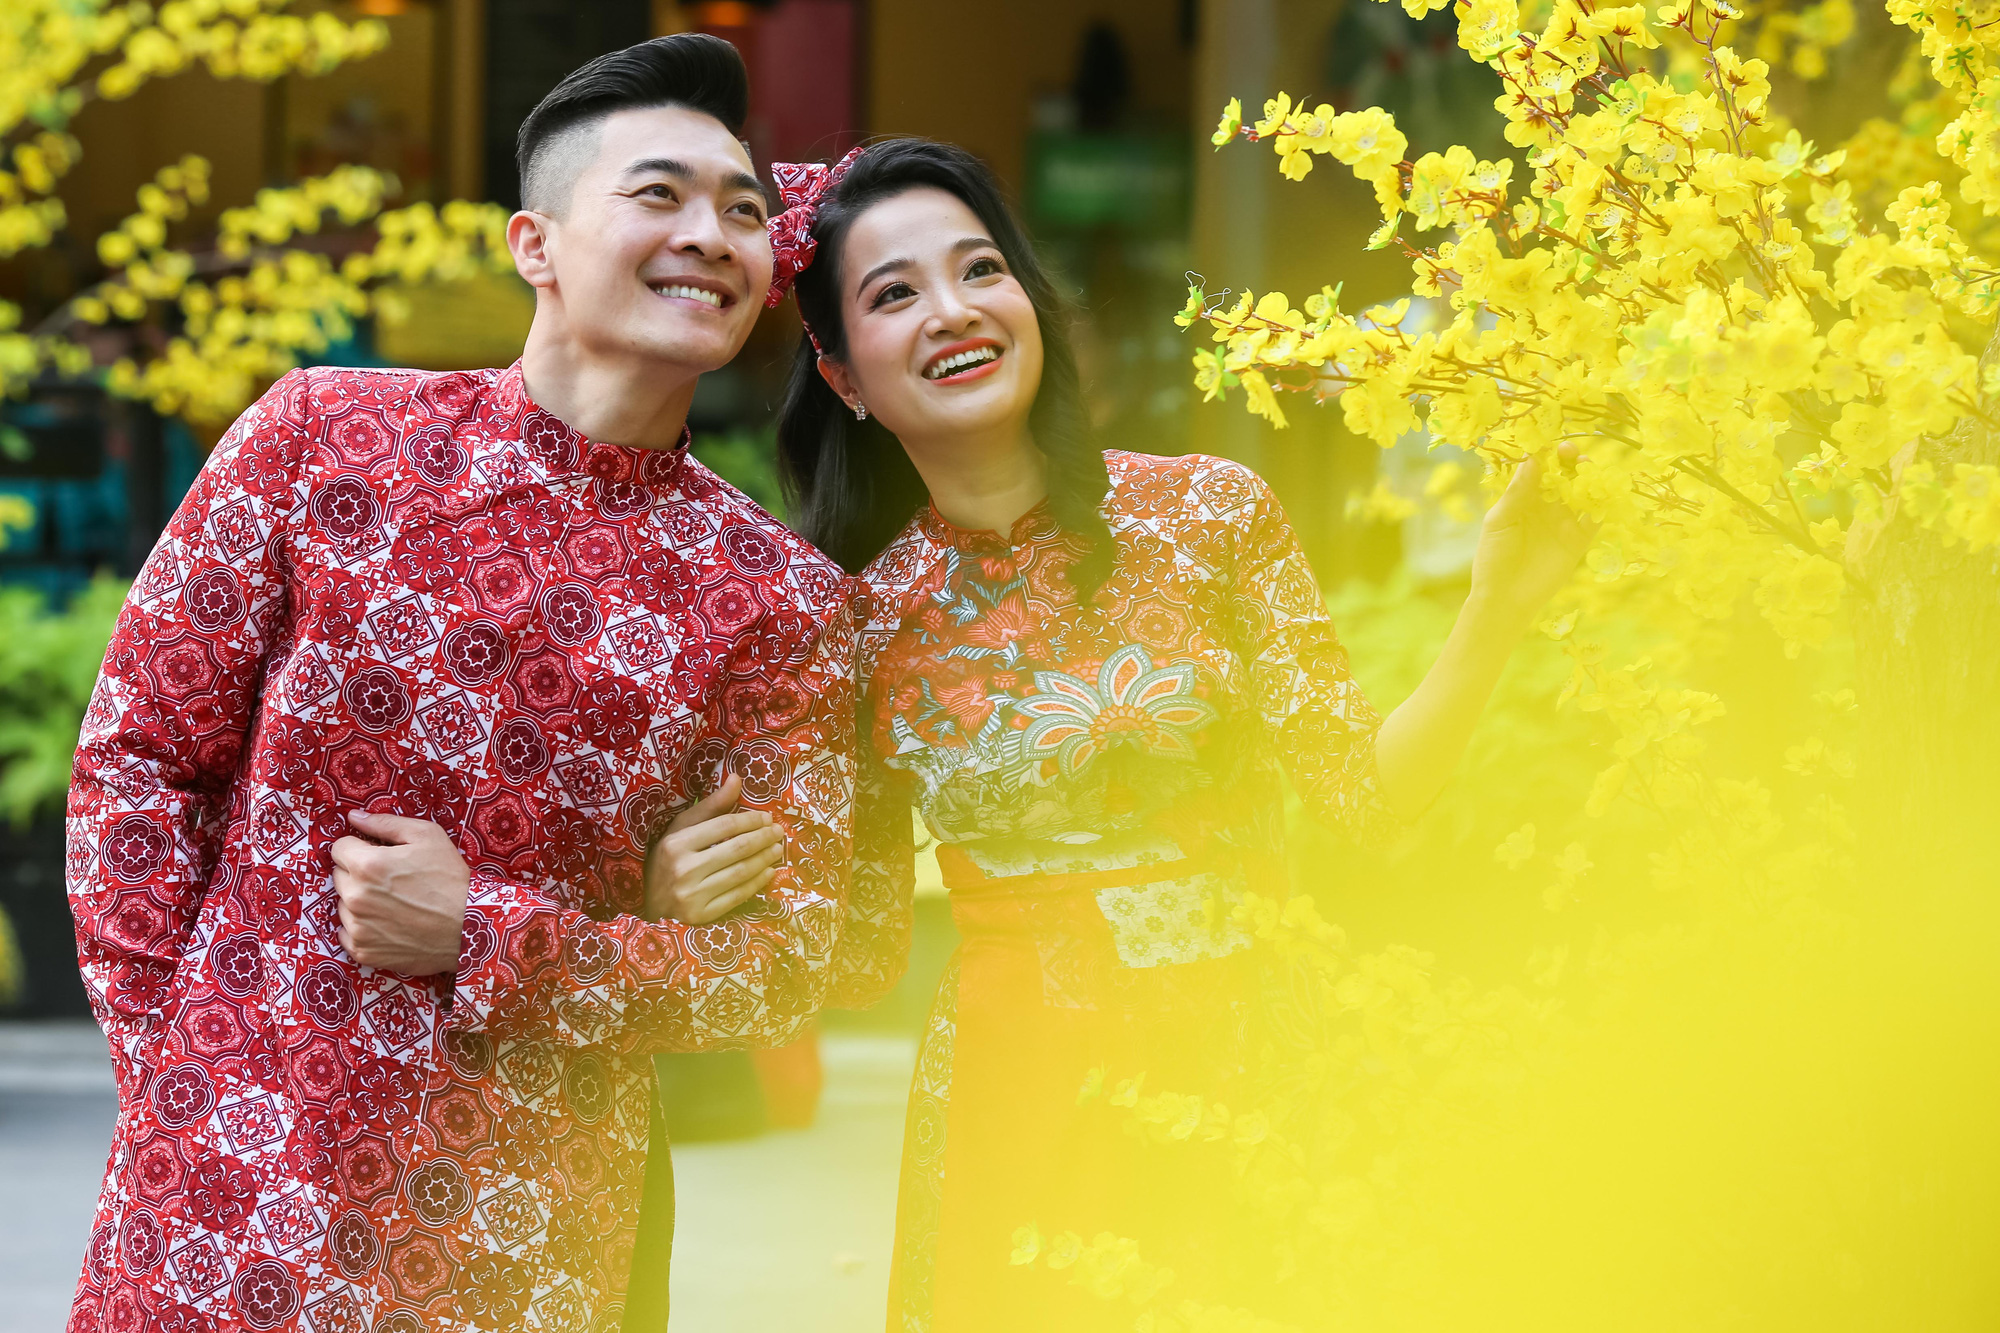 Áo dài xuống phố - vẻ đẹp truyền thống của đất nước Việt Nam. Hãy cùng ngắm nhìn những bộ áo dài duyên dáng, thanh lịch và cực kỳ cuốn hút. Diện áo dài sẽ giúp bạn tự tin và nổi bật hơn trong mùa Tết này!